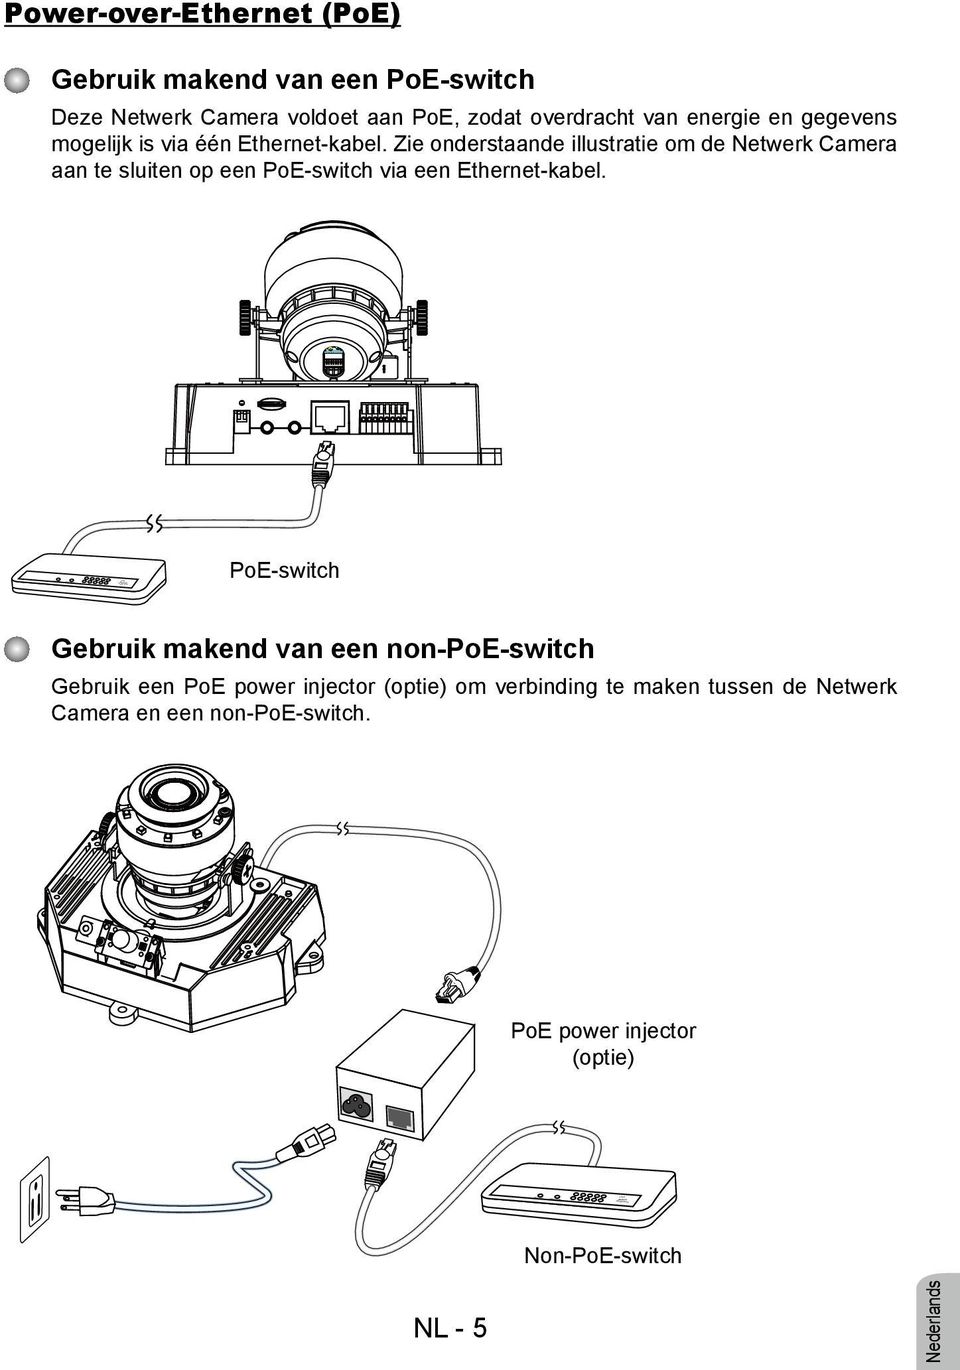 Zie onderstaande illustratie om de Netwerk Camera aan te sluiten op een PoE-switch via een Ethernet-kabel.